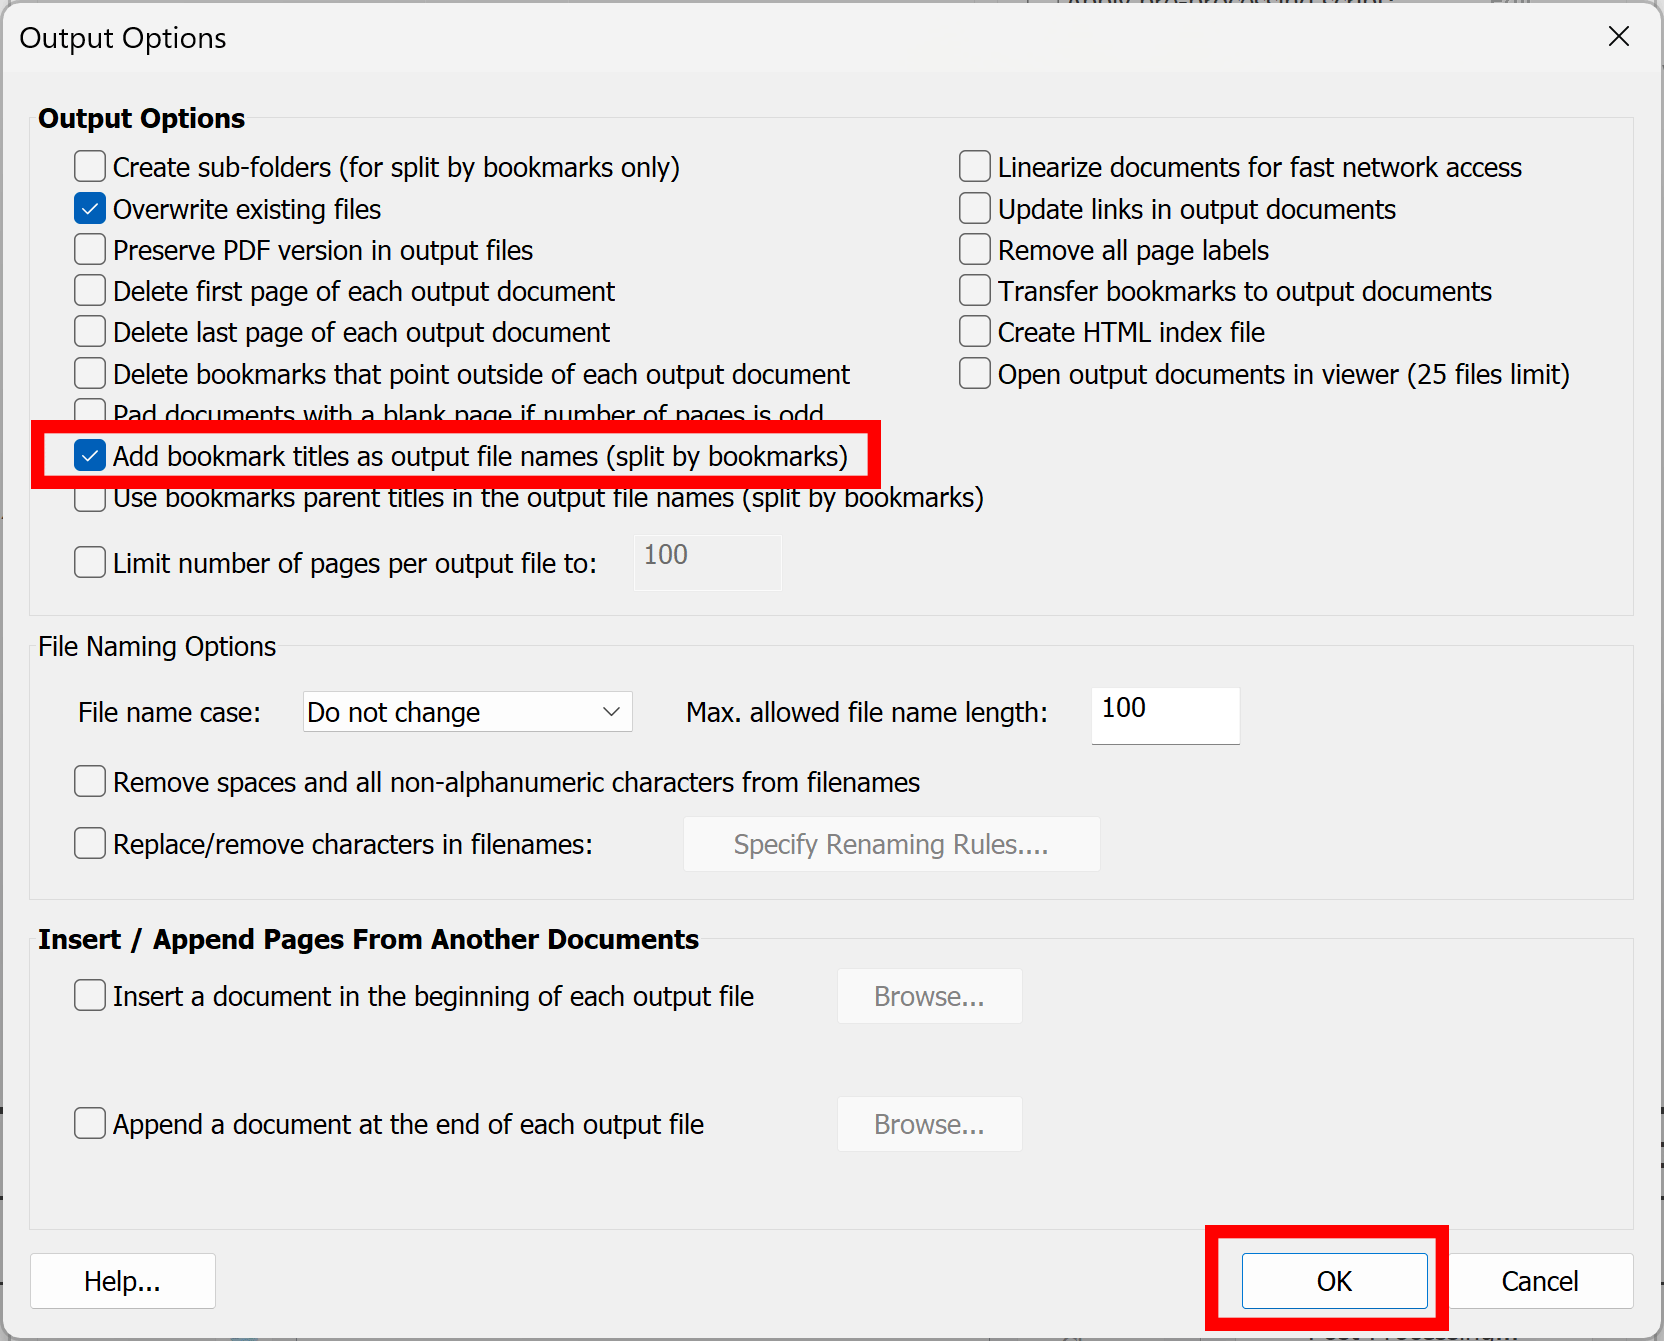 Check Create sub-folders option